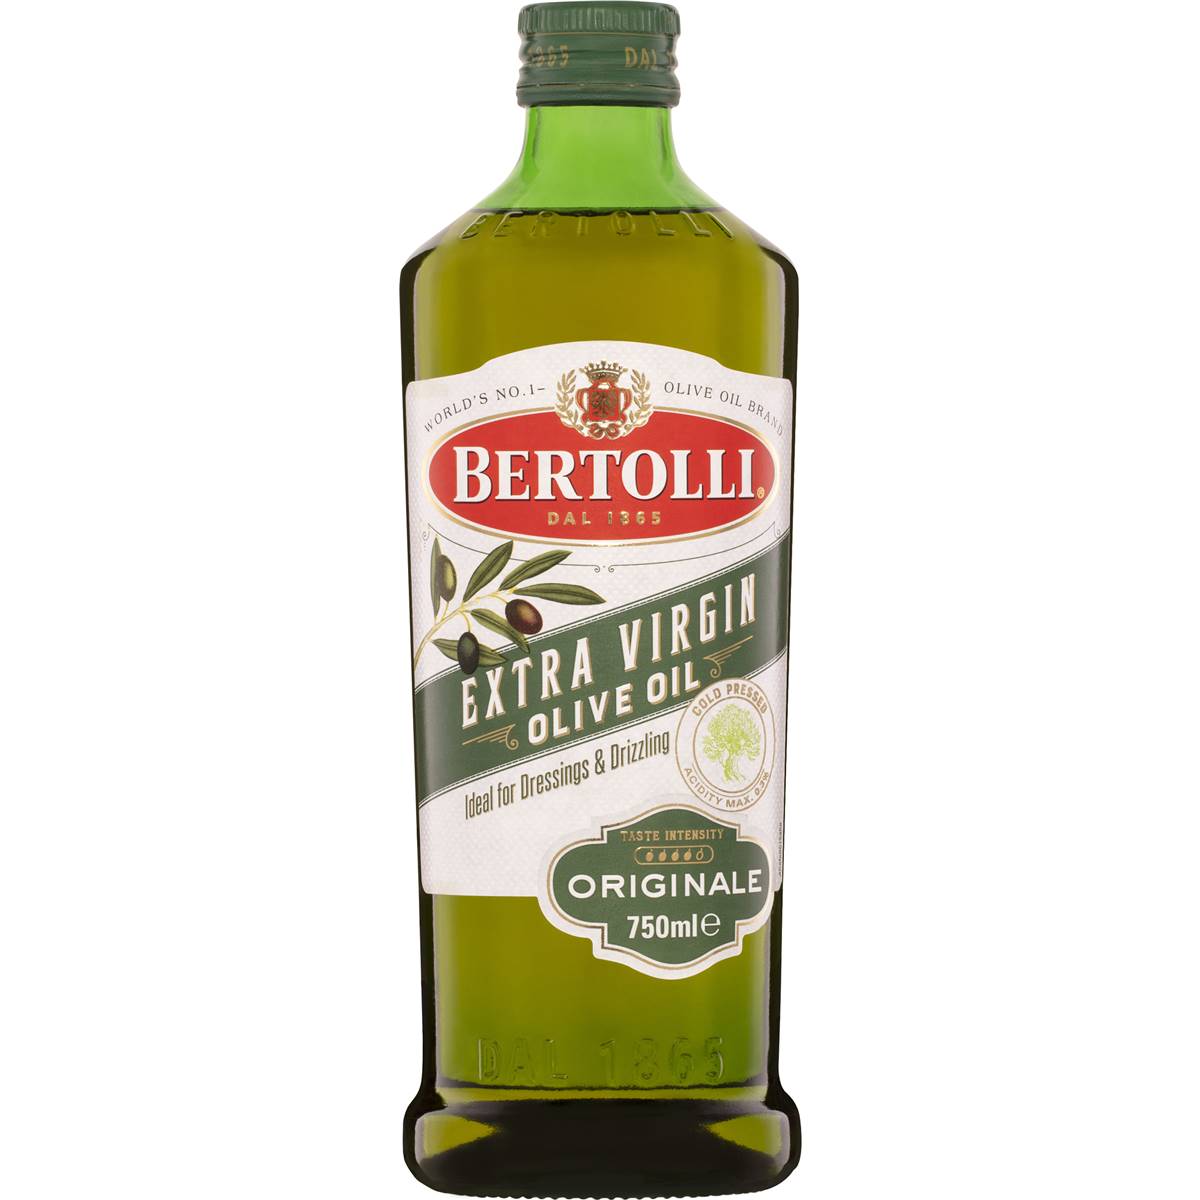 Bertolli Extra Virgin Olive Oil Originale 750ml